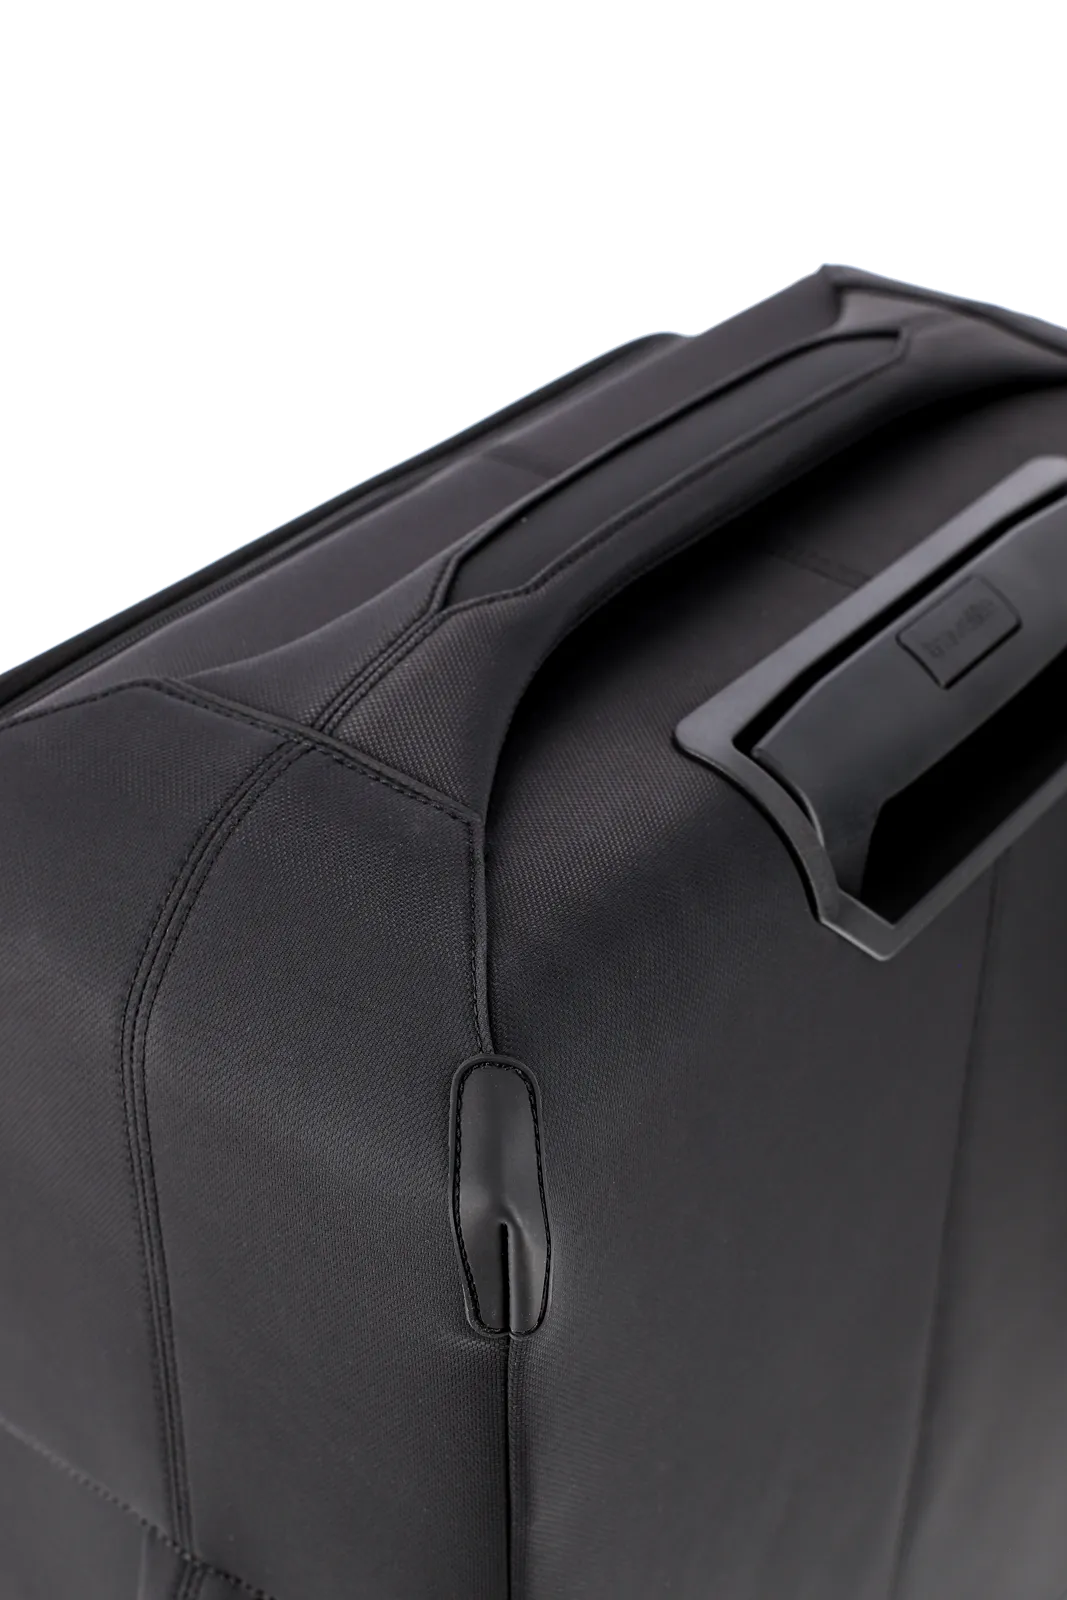 Weichgepäck Koffer Priima in schwarz von travelite Nahaufnahme Griff oben